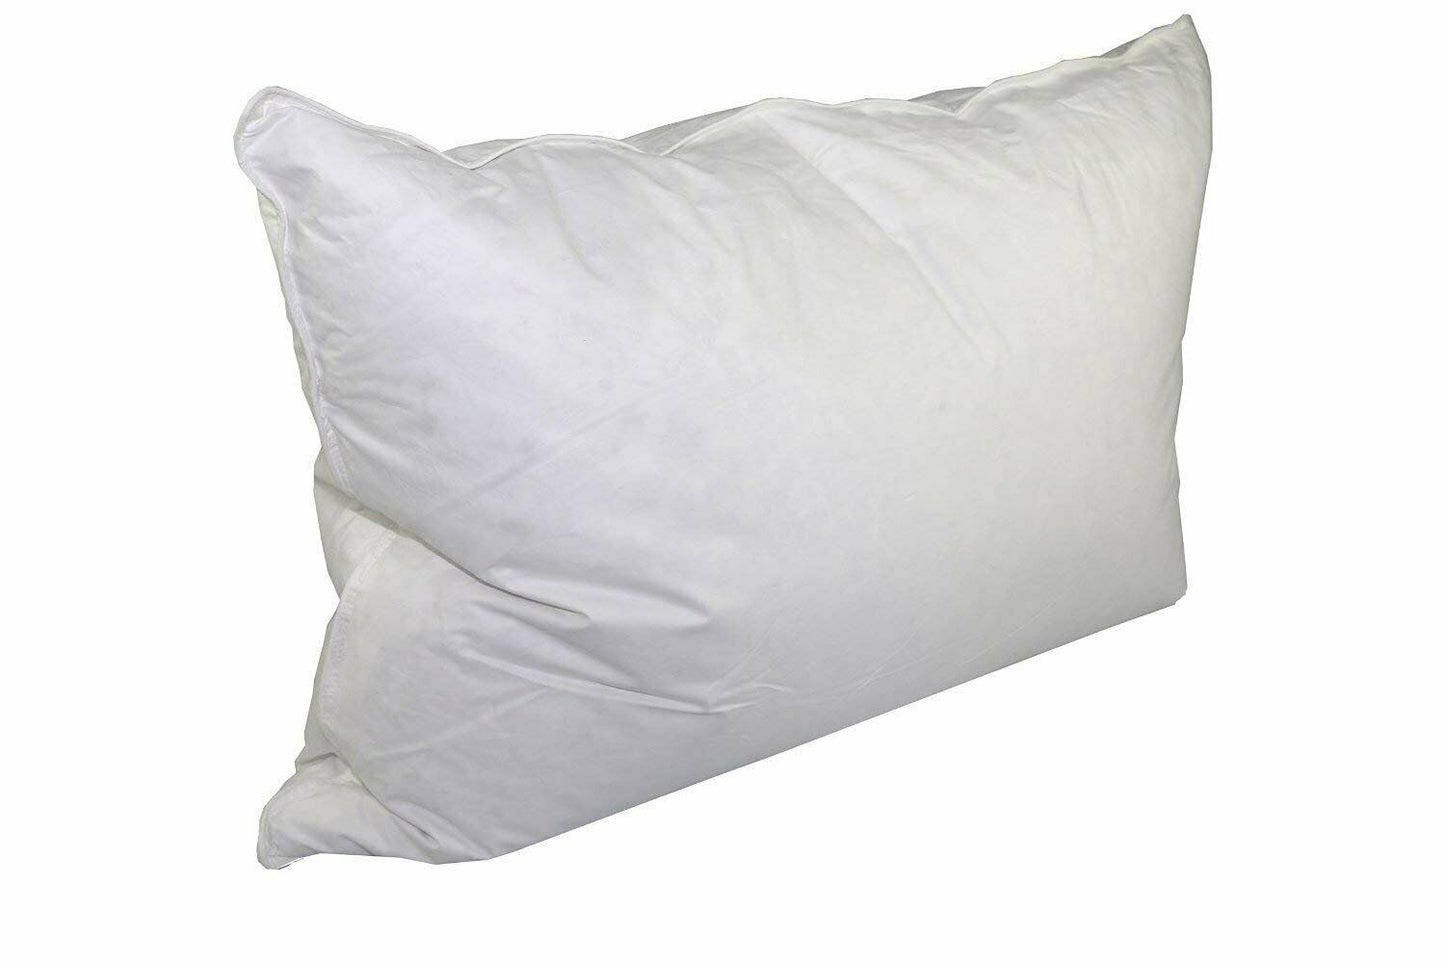 WynRest Gel Fiber King Pillow found at Days Inn Hotels